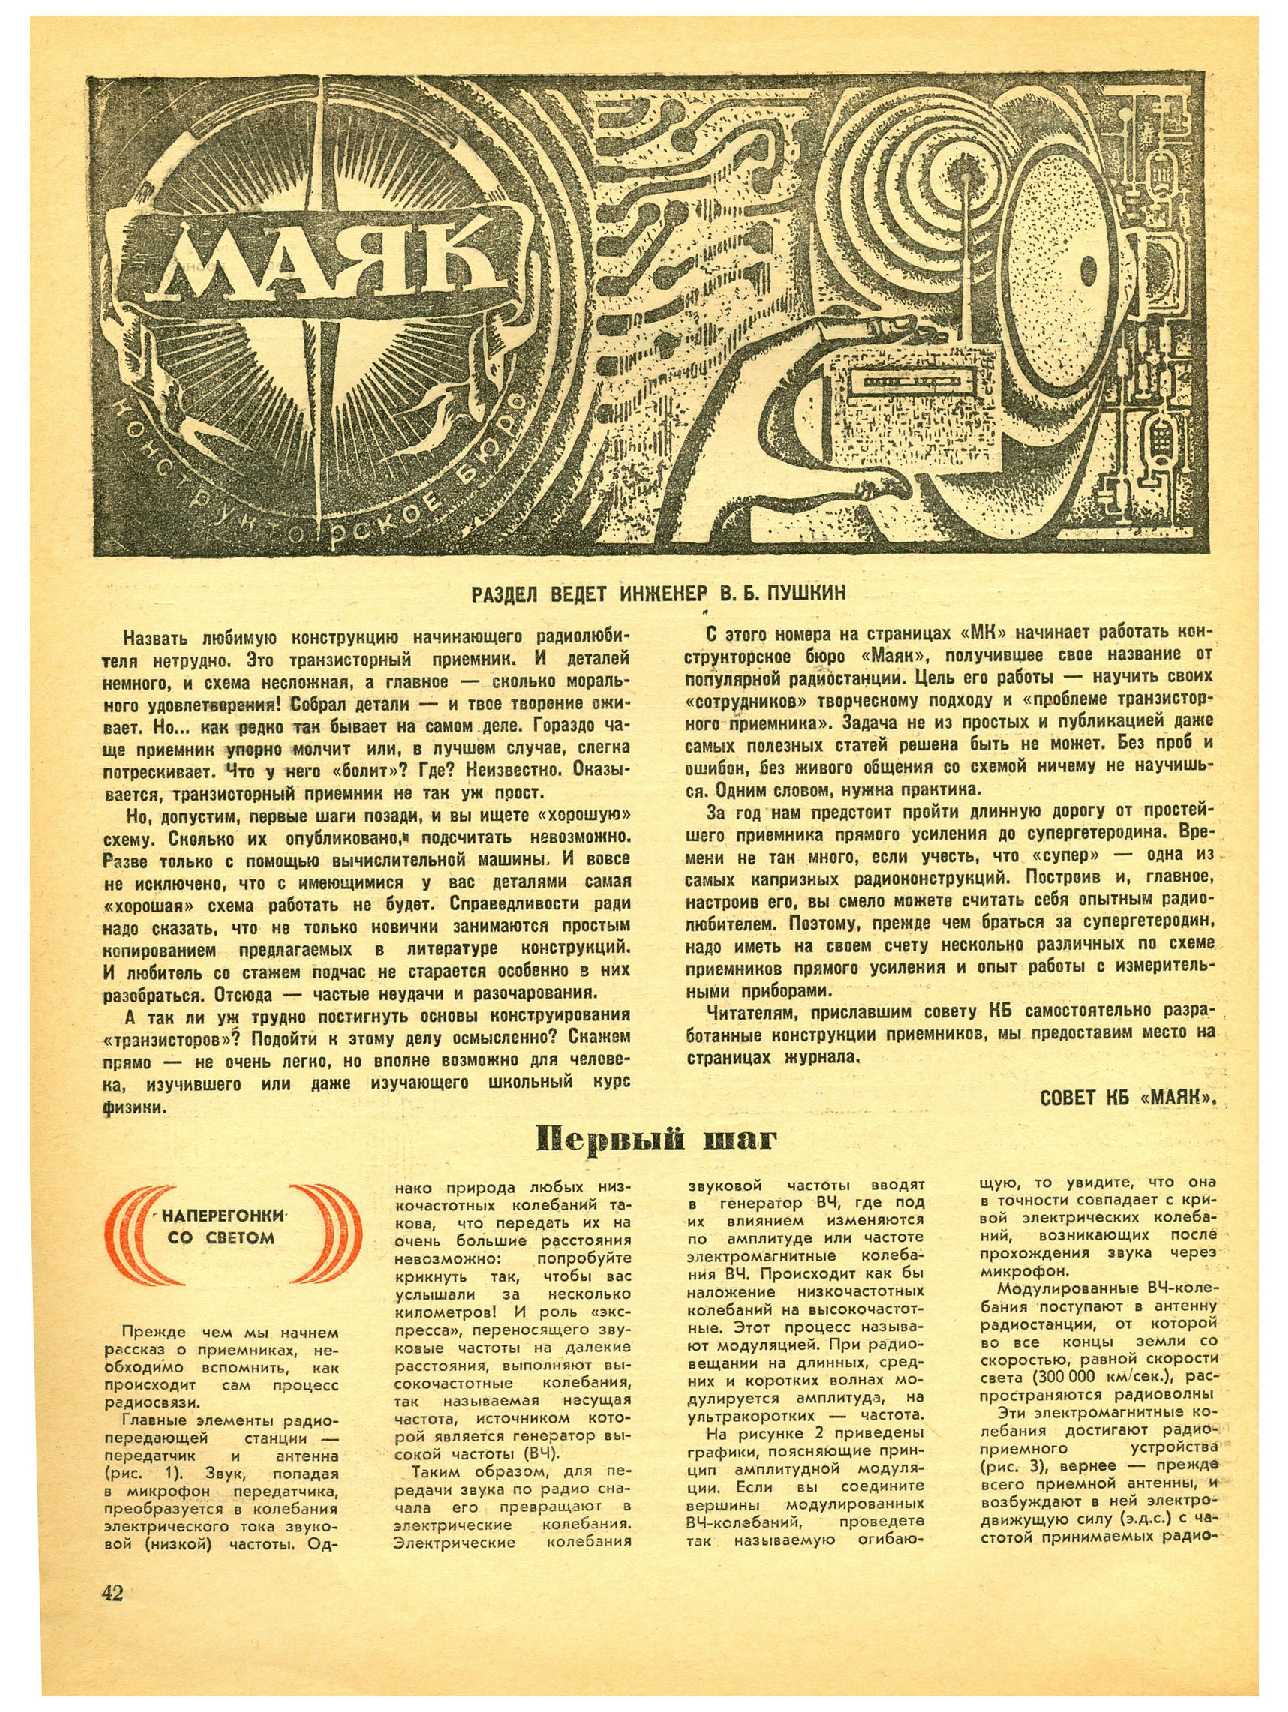 МК 1, 1971, 42 c.